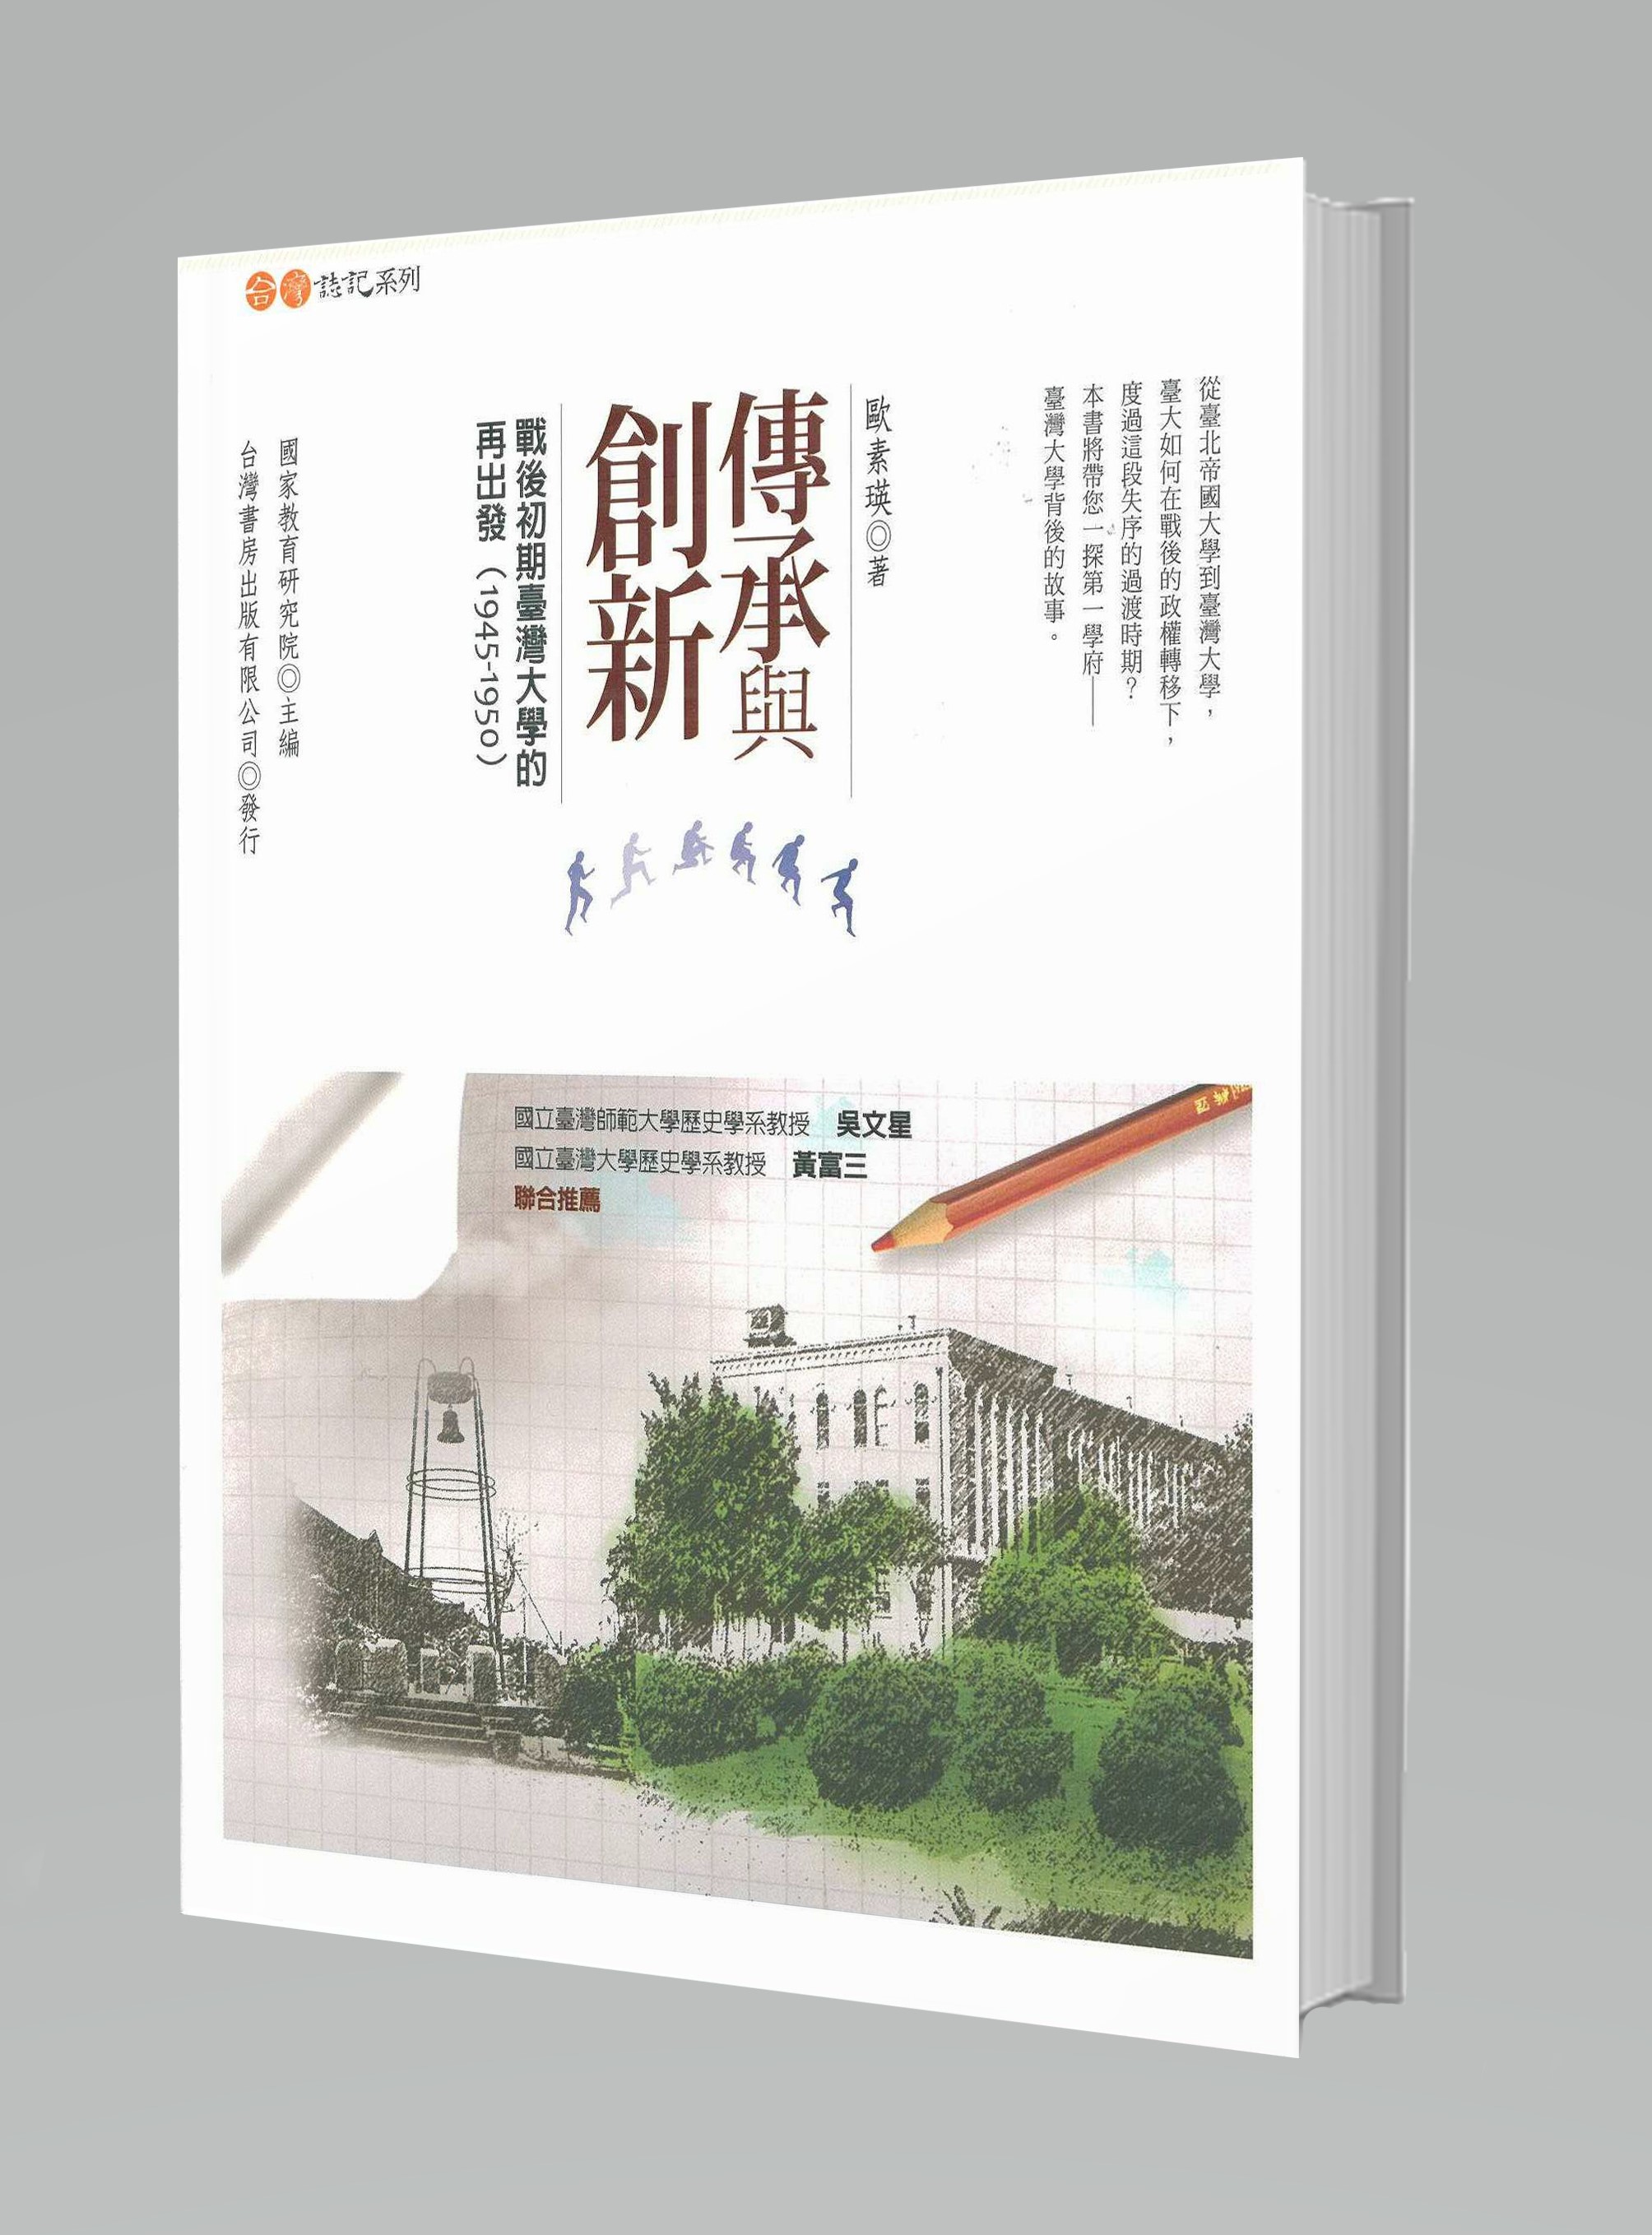 傳承與創新──戰後初期臺灣大學的再出發(1945-1950)